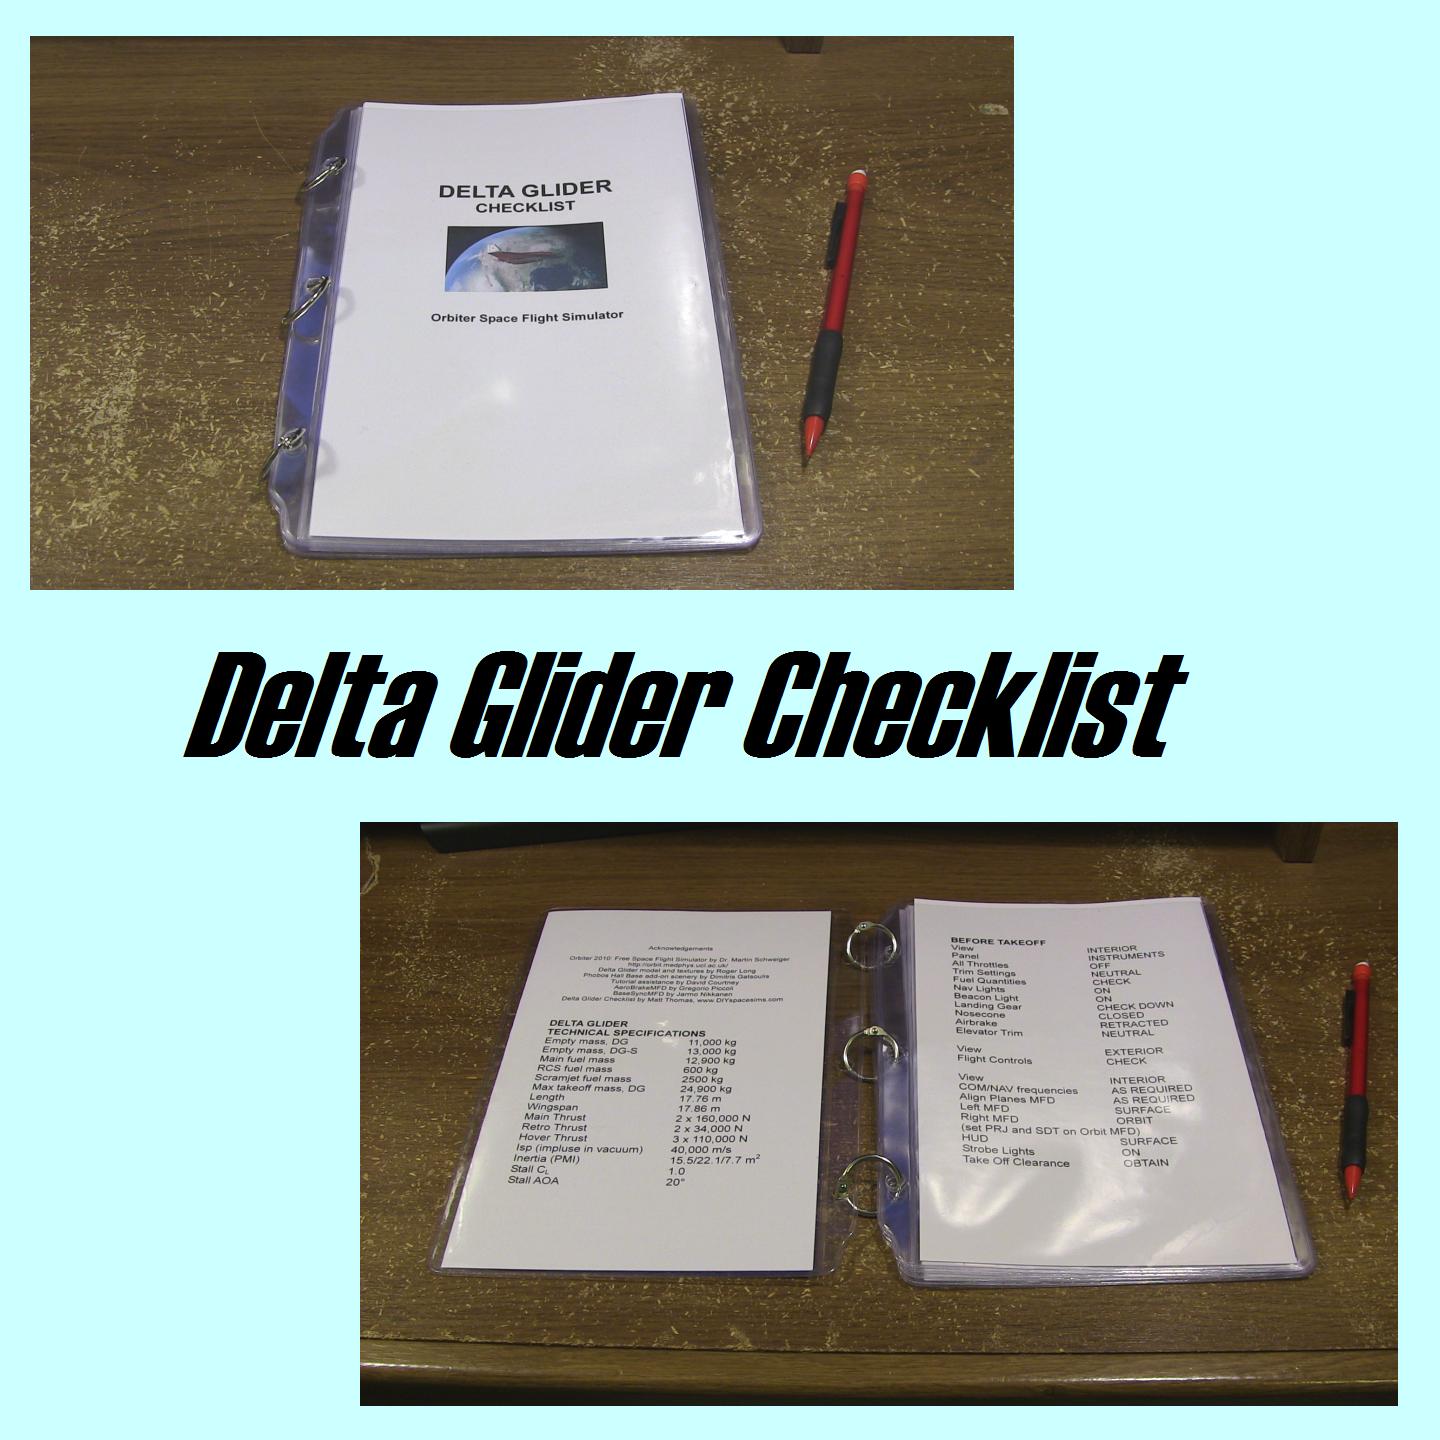 Delta Glider checklist pic.jpg